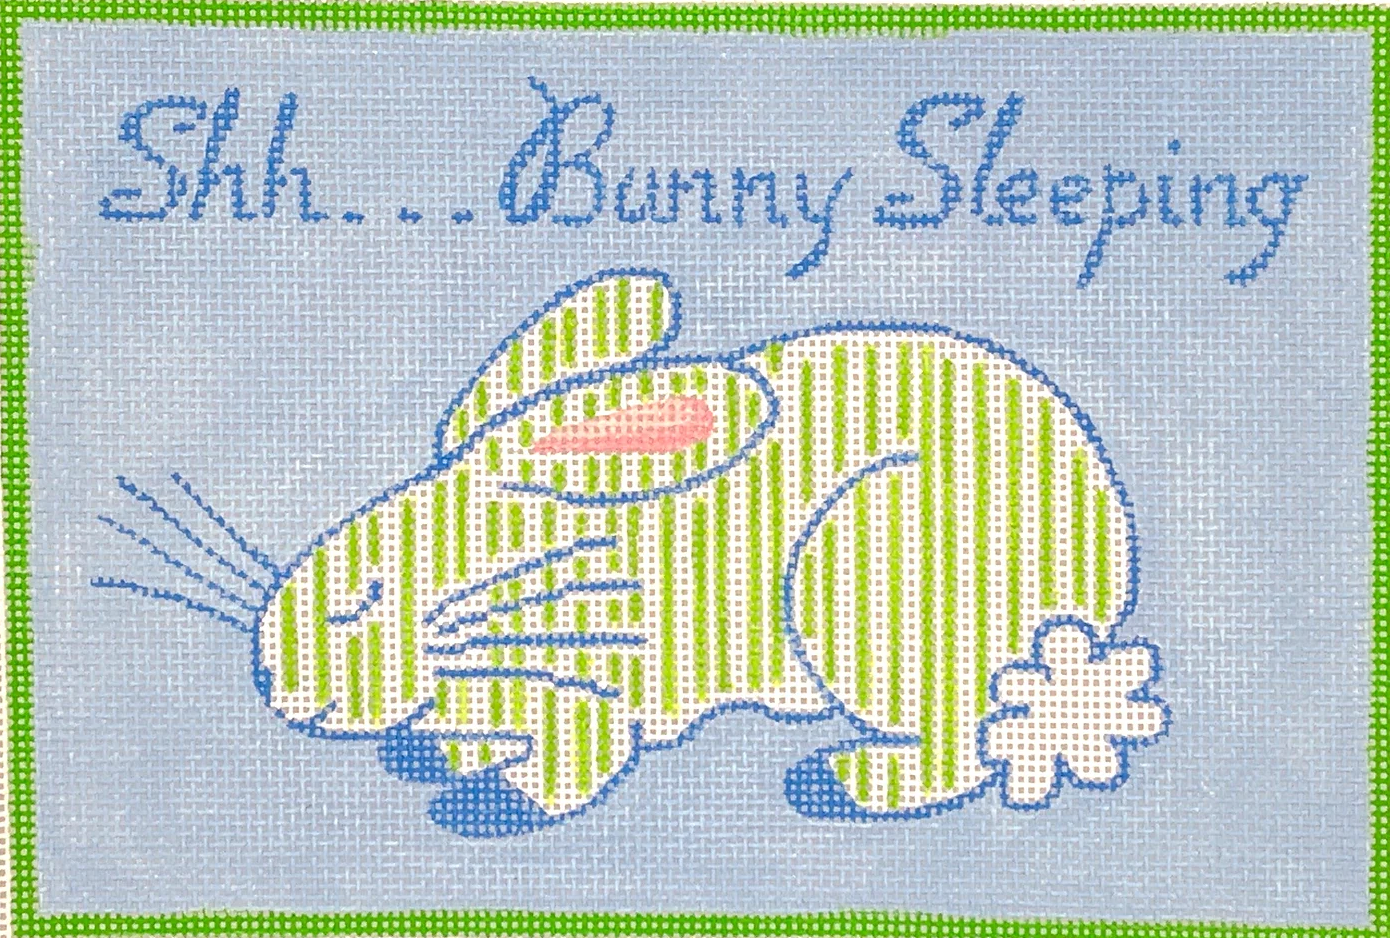 JW-DH-07 Shh... Bunny Sleeping - Blue